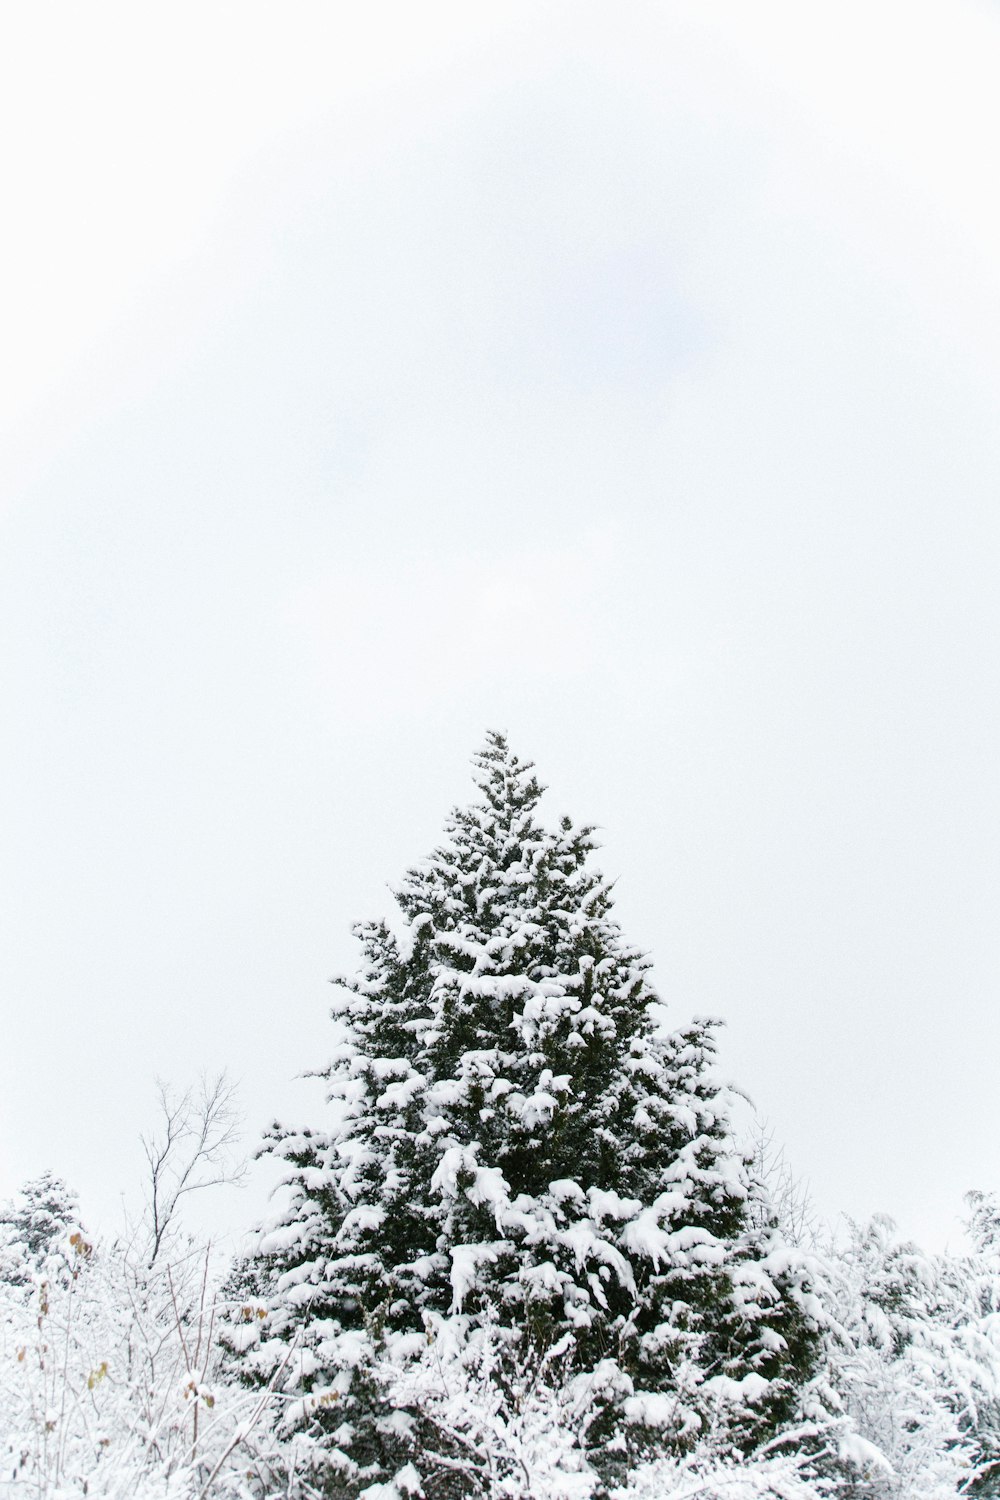 La cima di un albero coperto di neve.